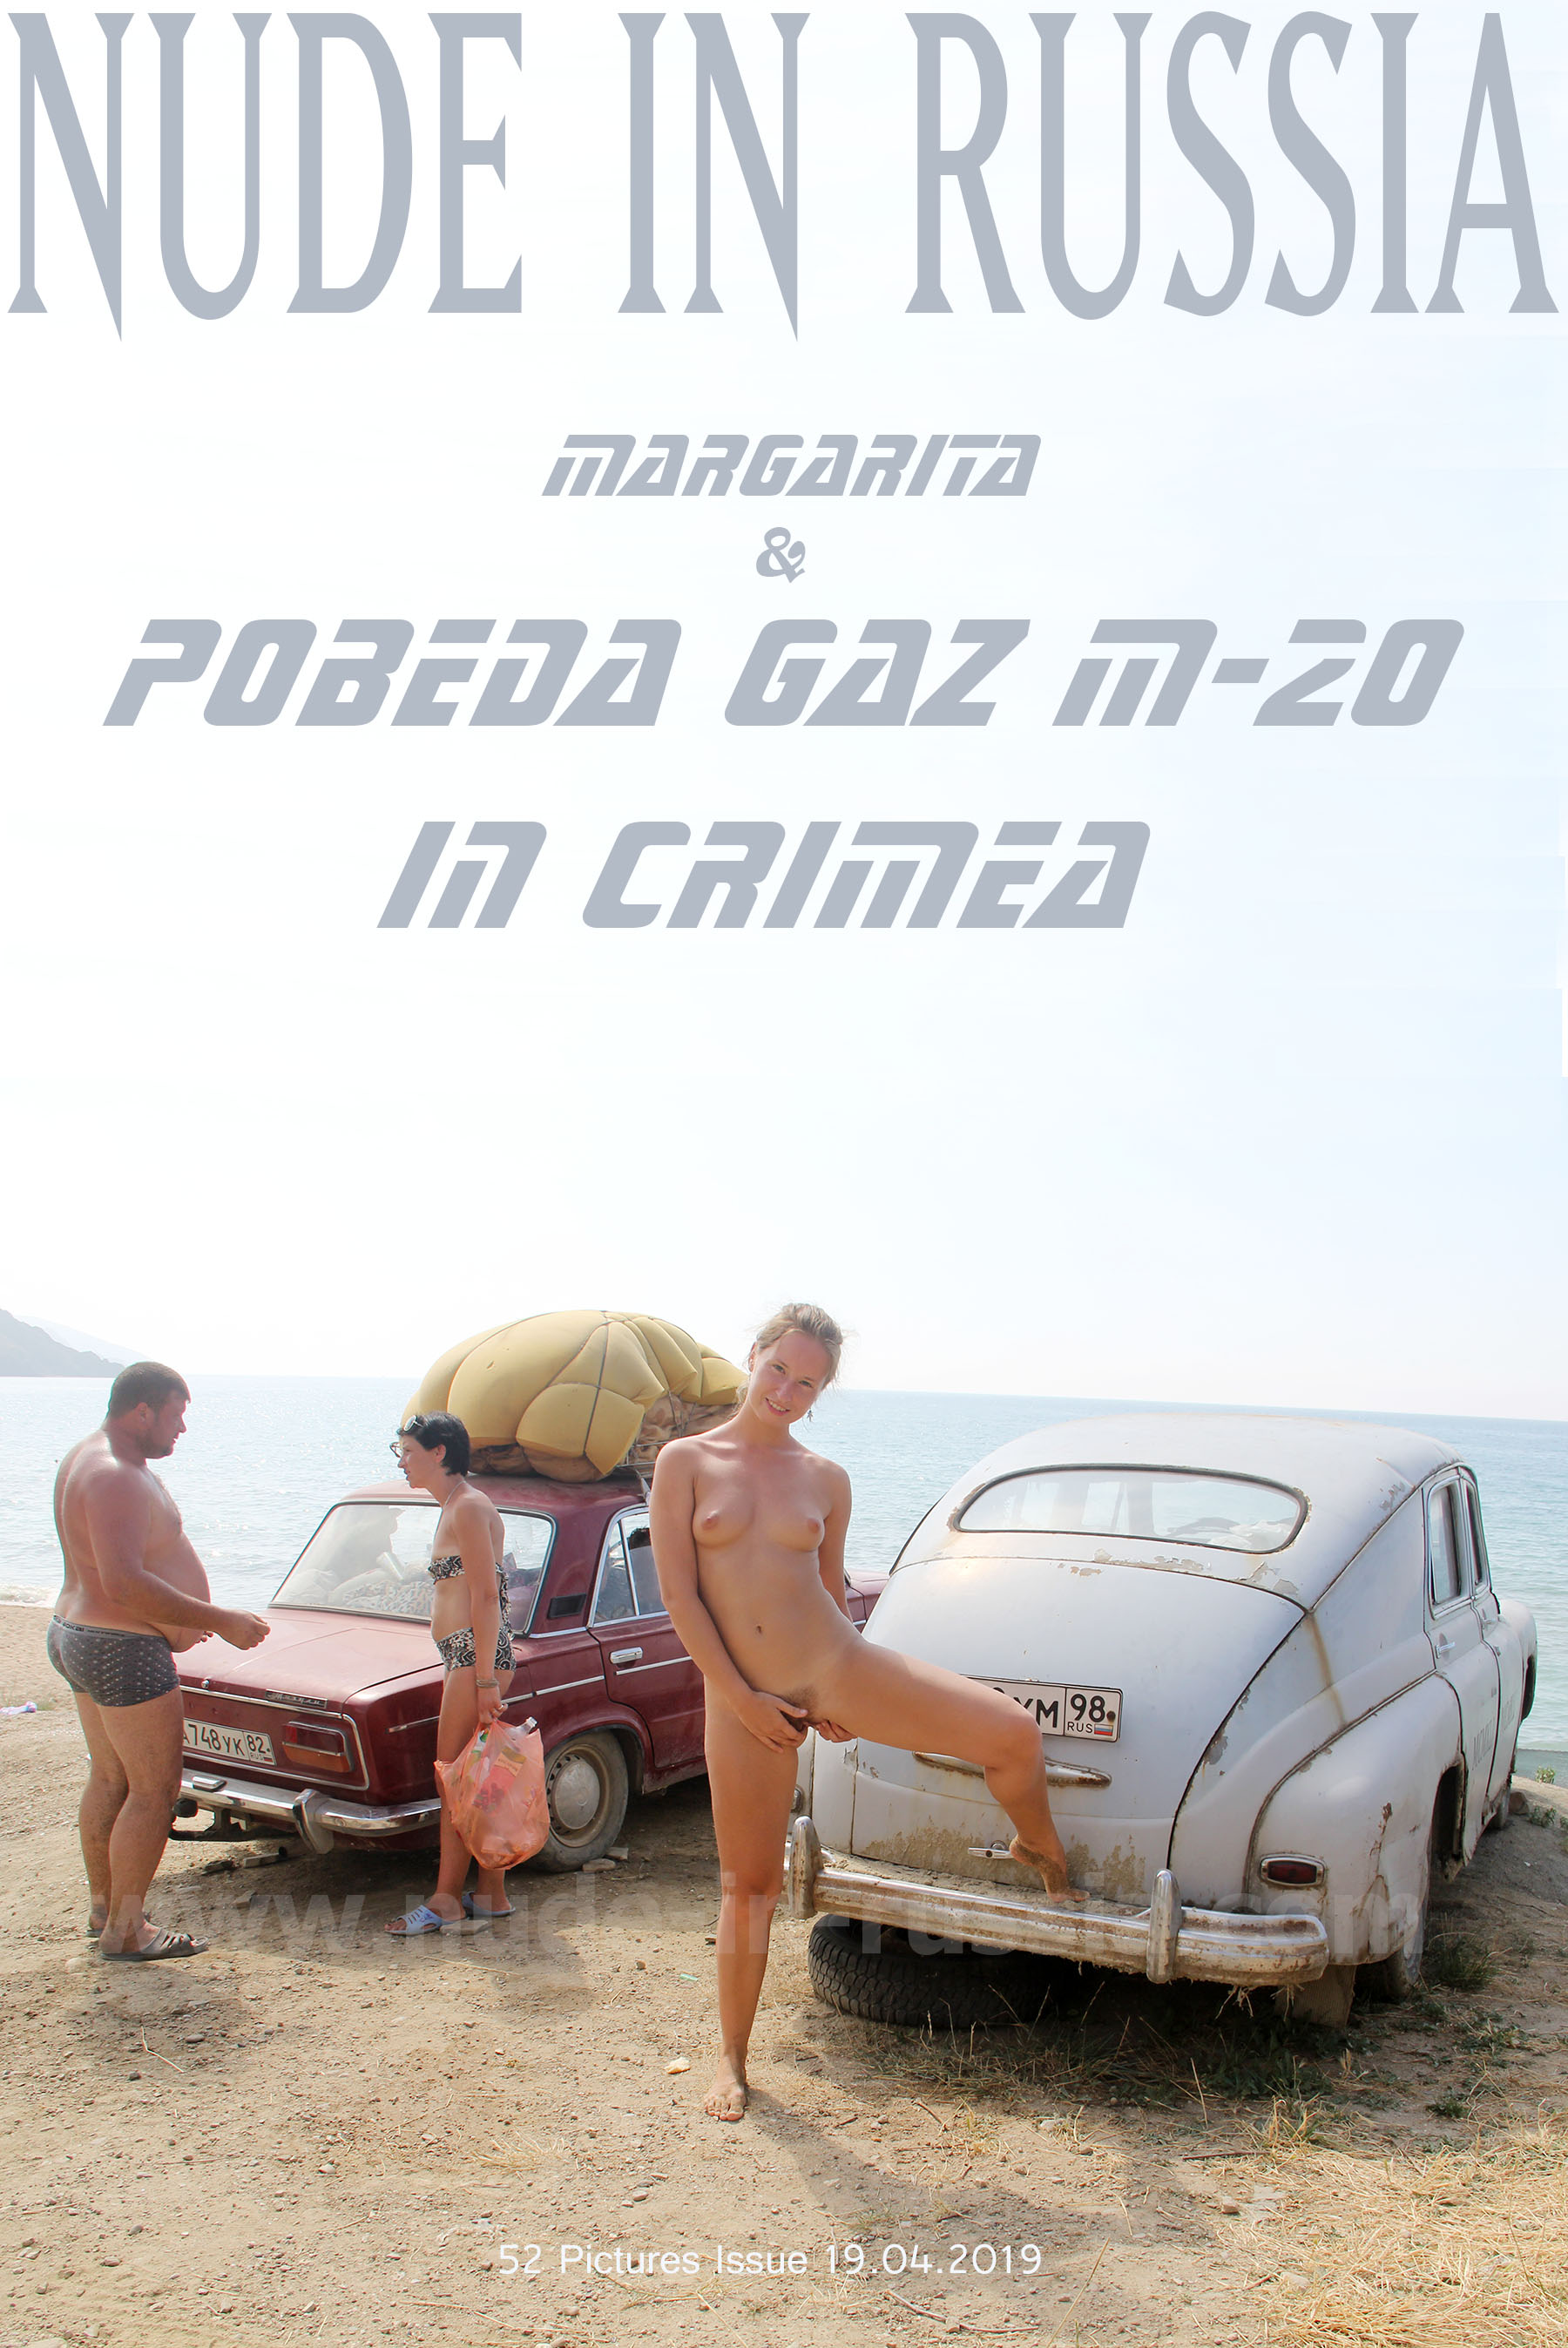 NIR-2019-04-19 - Margarita S - Pobeda GAZ 20 (1).jpg